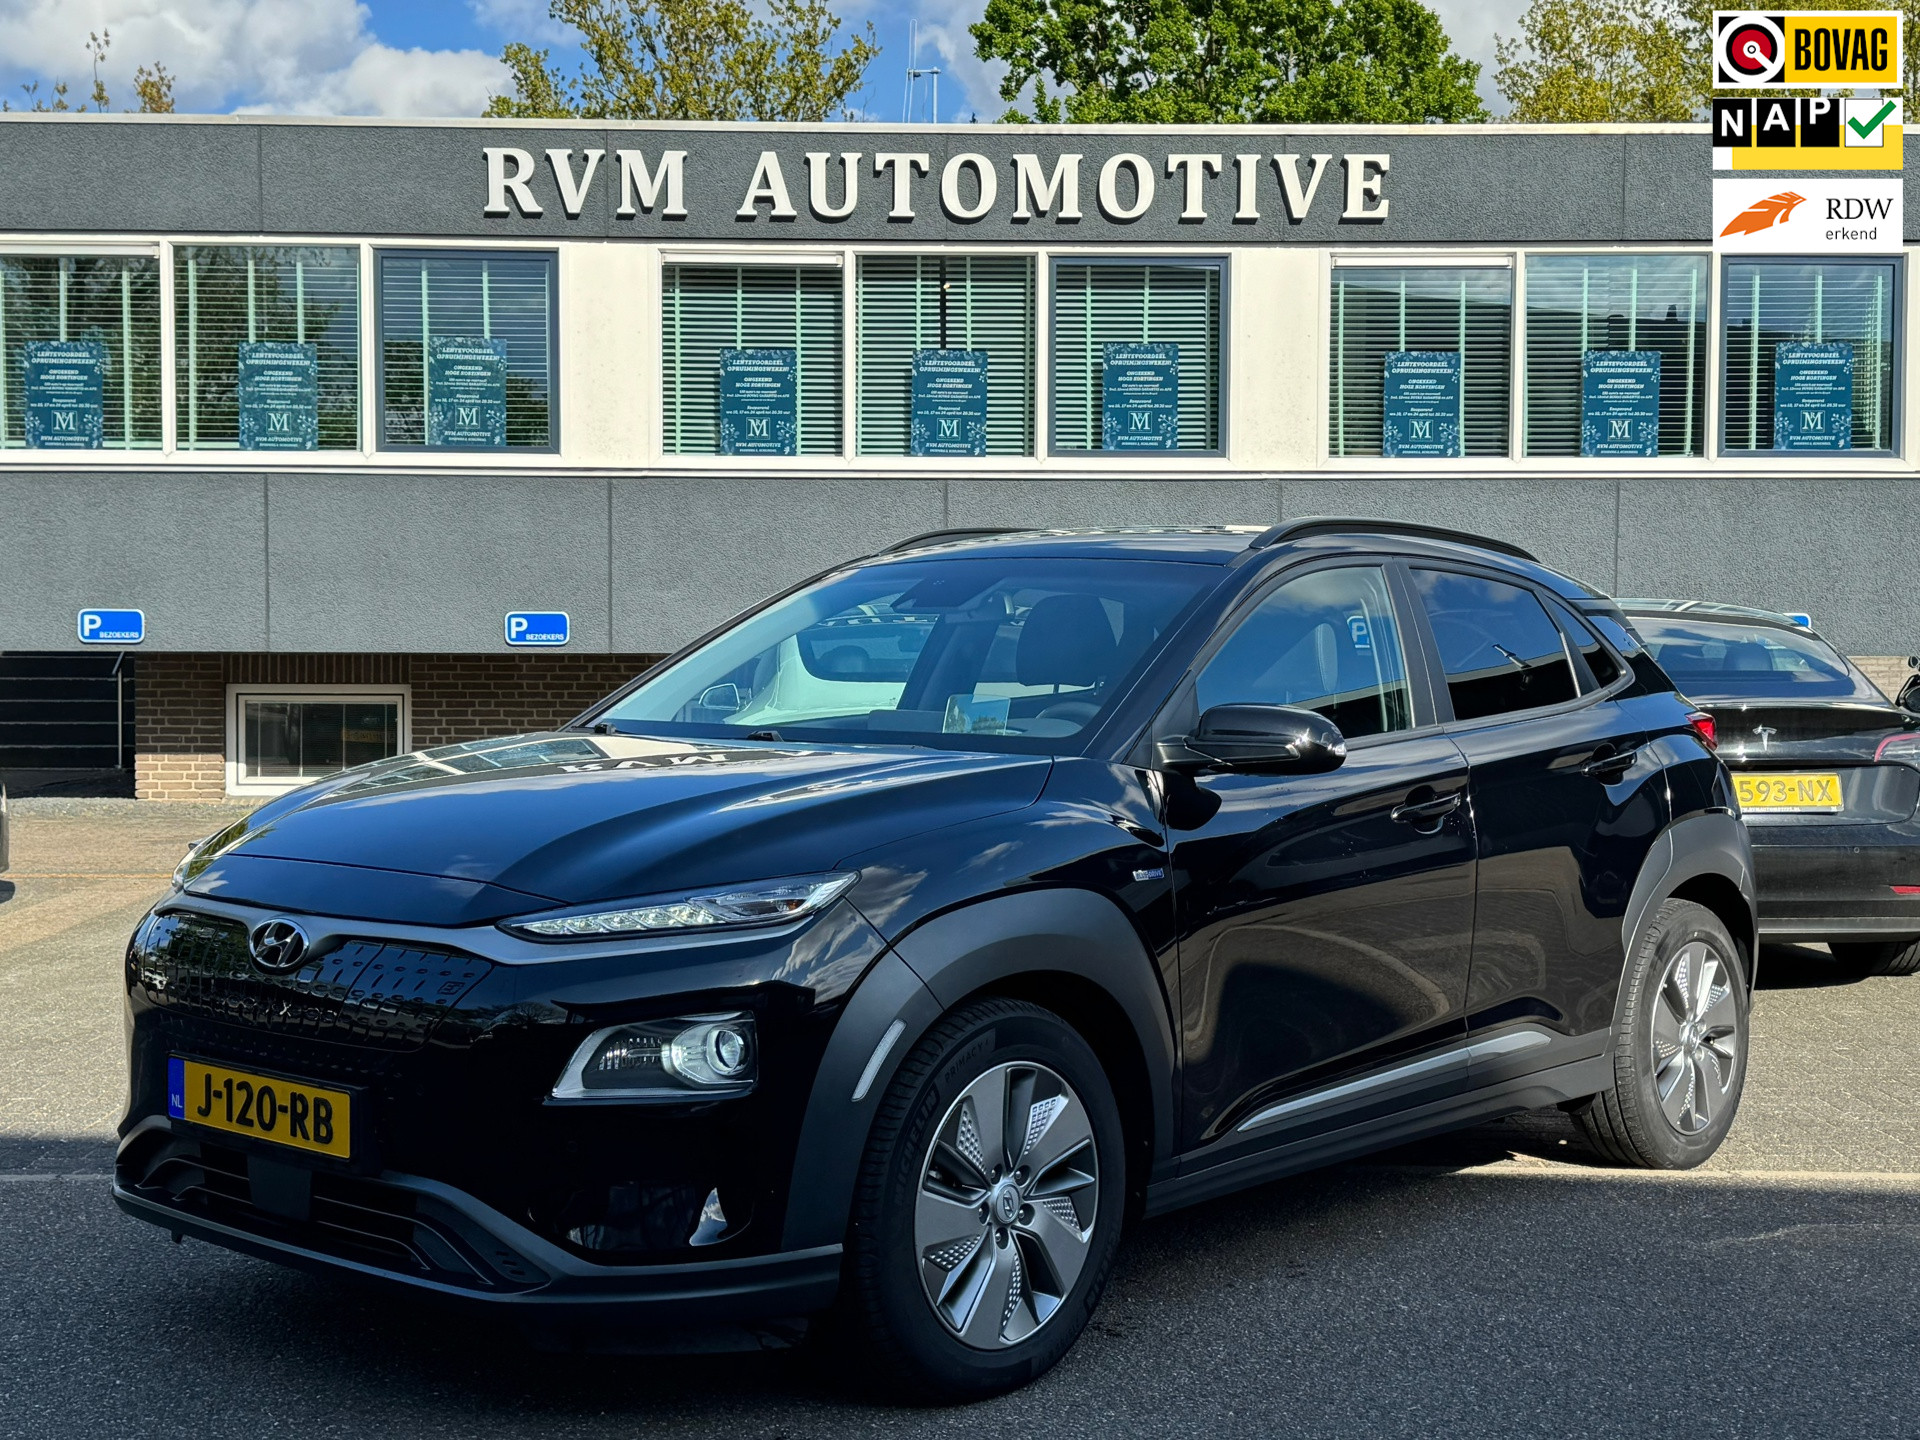 Hyundai Kona EV Premium 64 kWh VAN 25.900,- VOOR 24.877,- UW LENTEVOORDEEL 1.023,-! bij viaBOVAG.nl